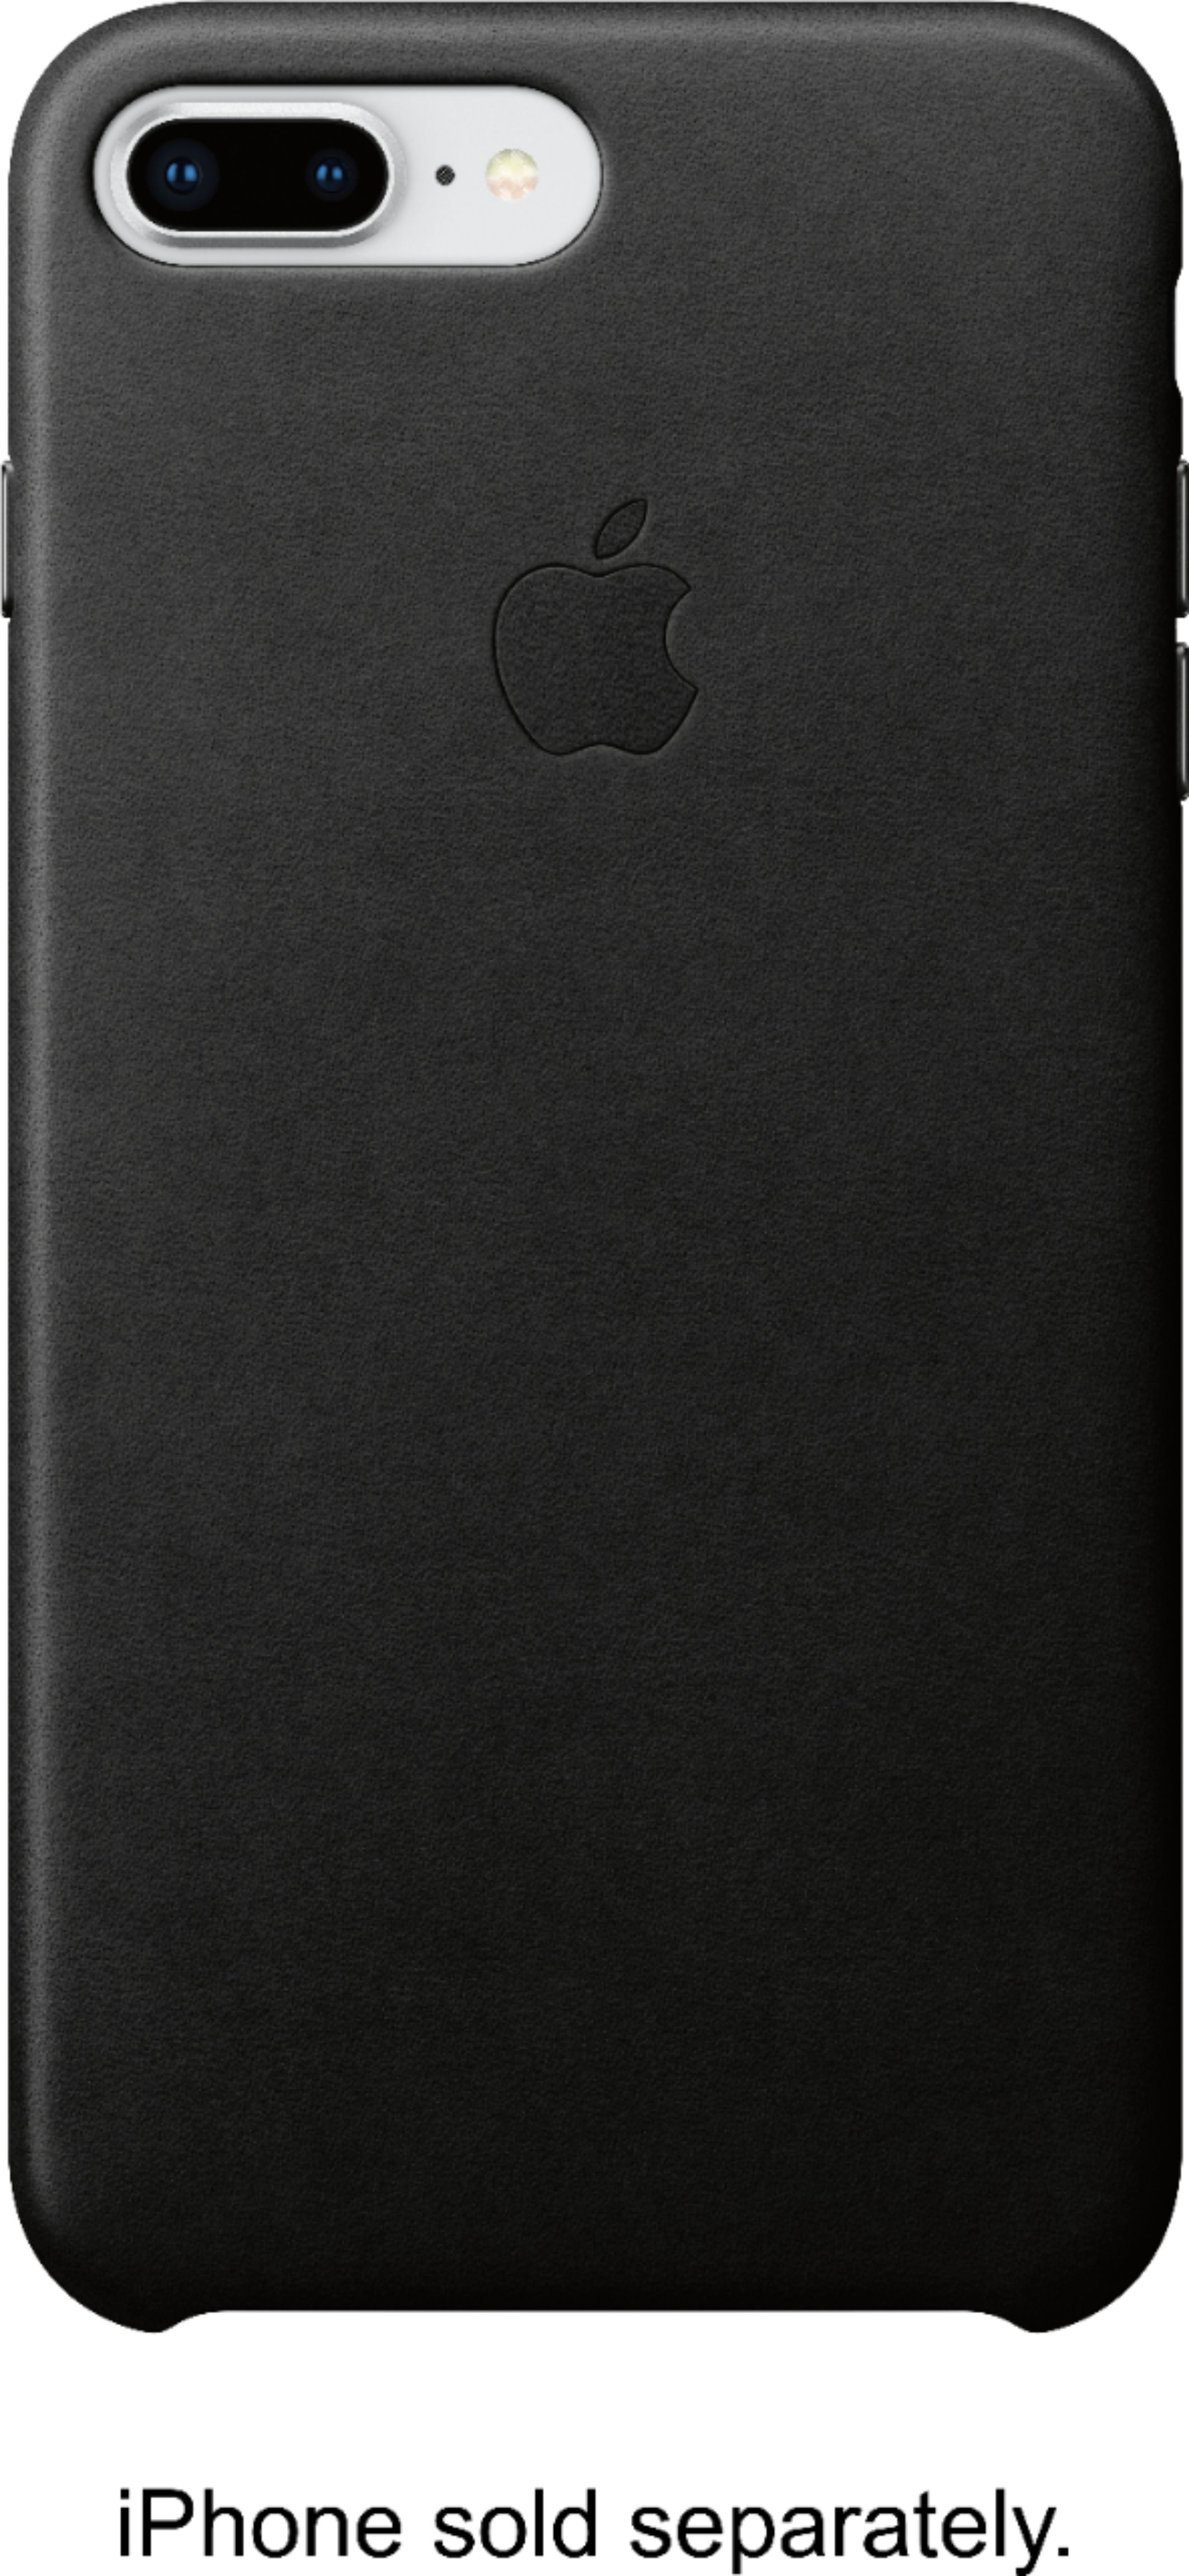 Apple iPhone® 8 Plus/7 Plus Leather Case Black MQHM2ZM/A - Best Buy